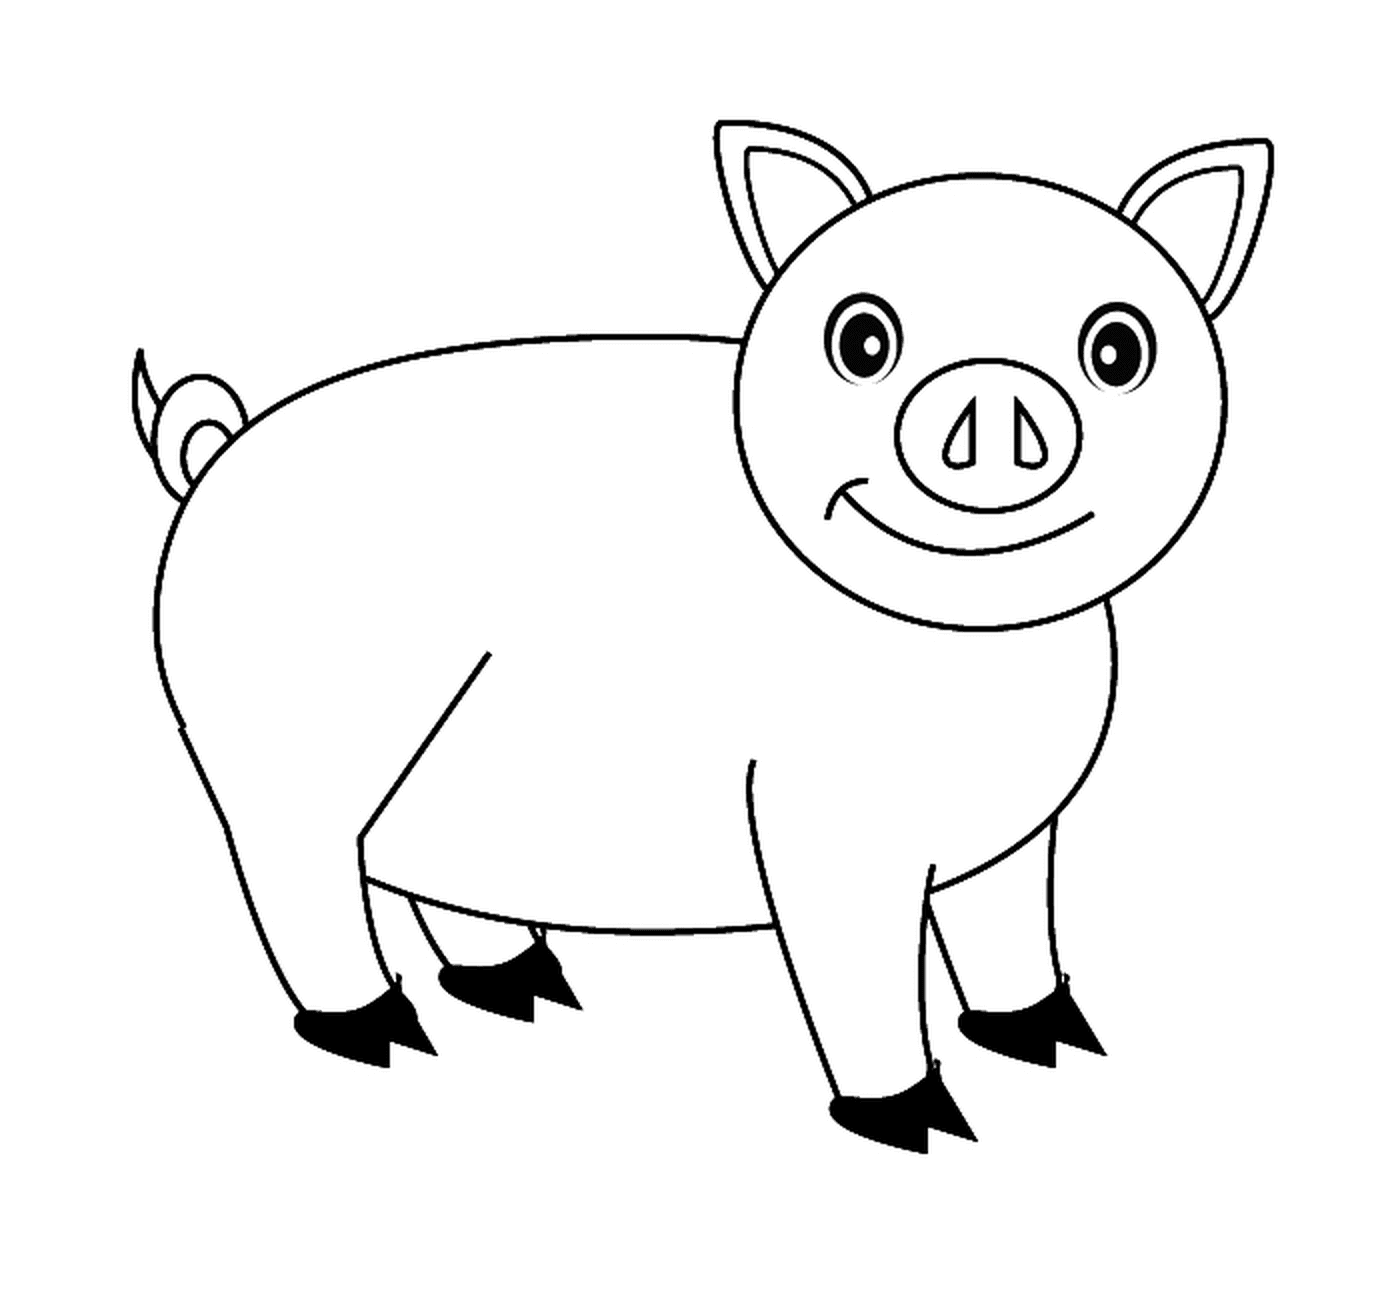  A cute pig 